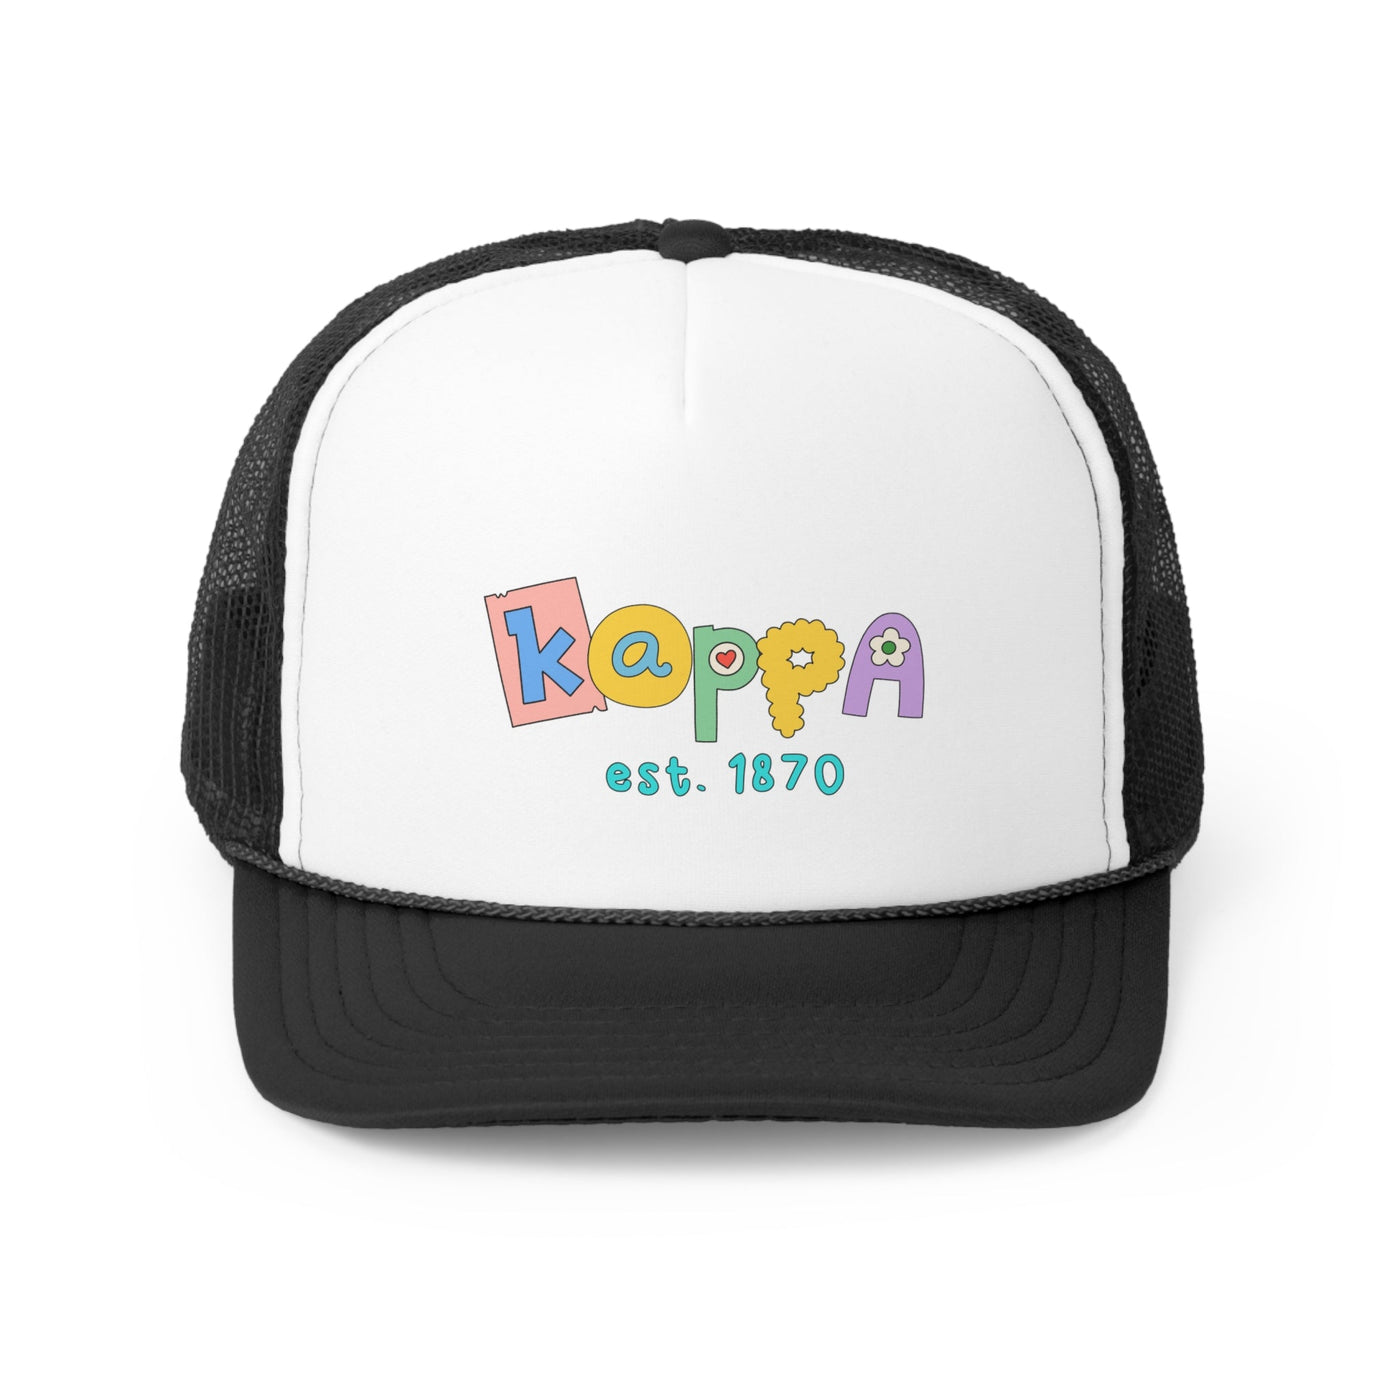 Kappa Kappa Gamma Scrabble Doodle Foam Trucker Hat